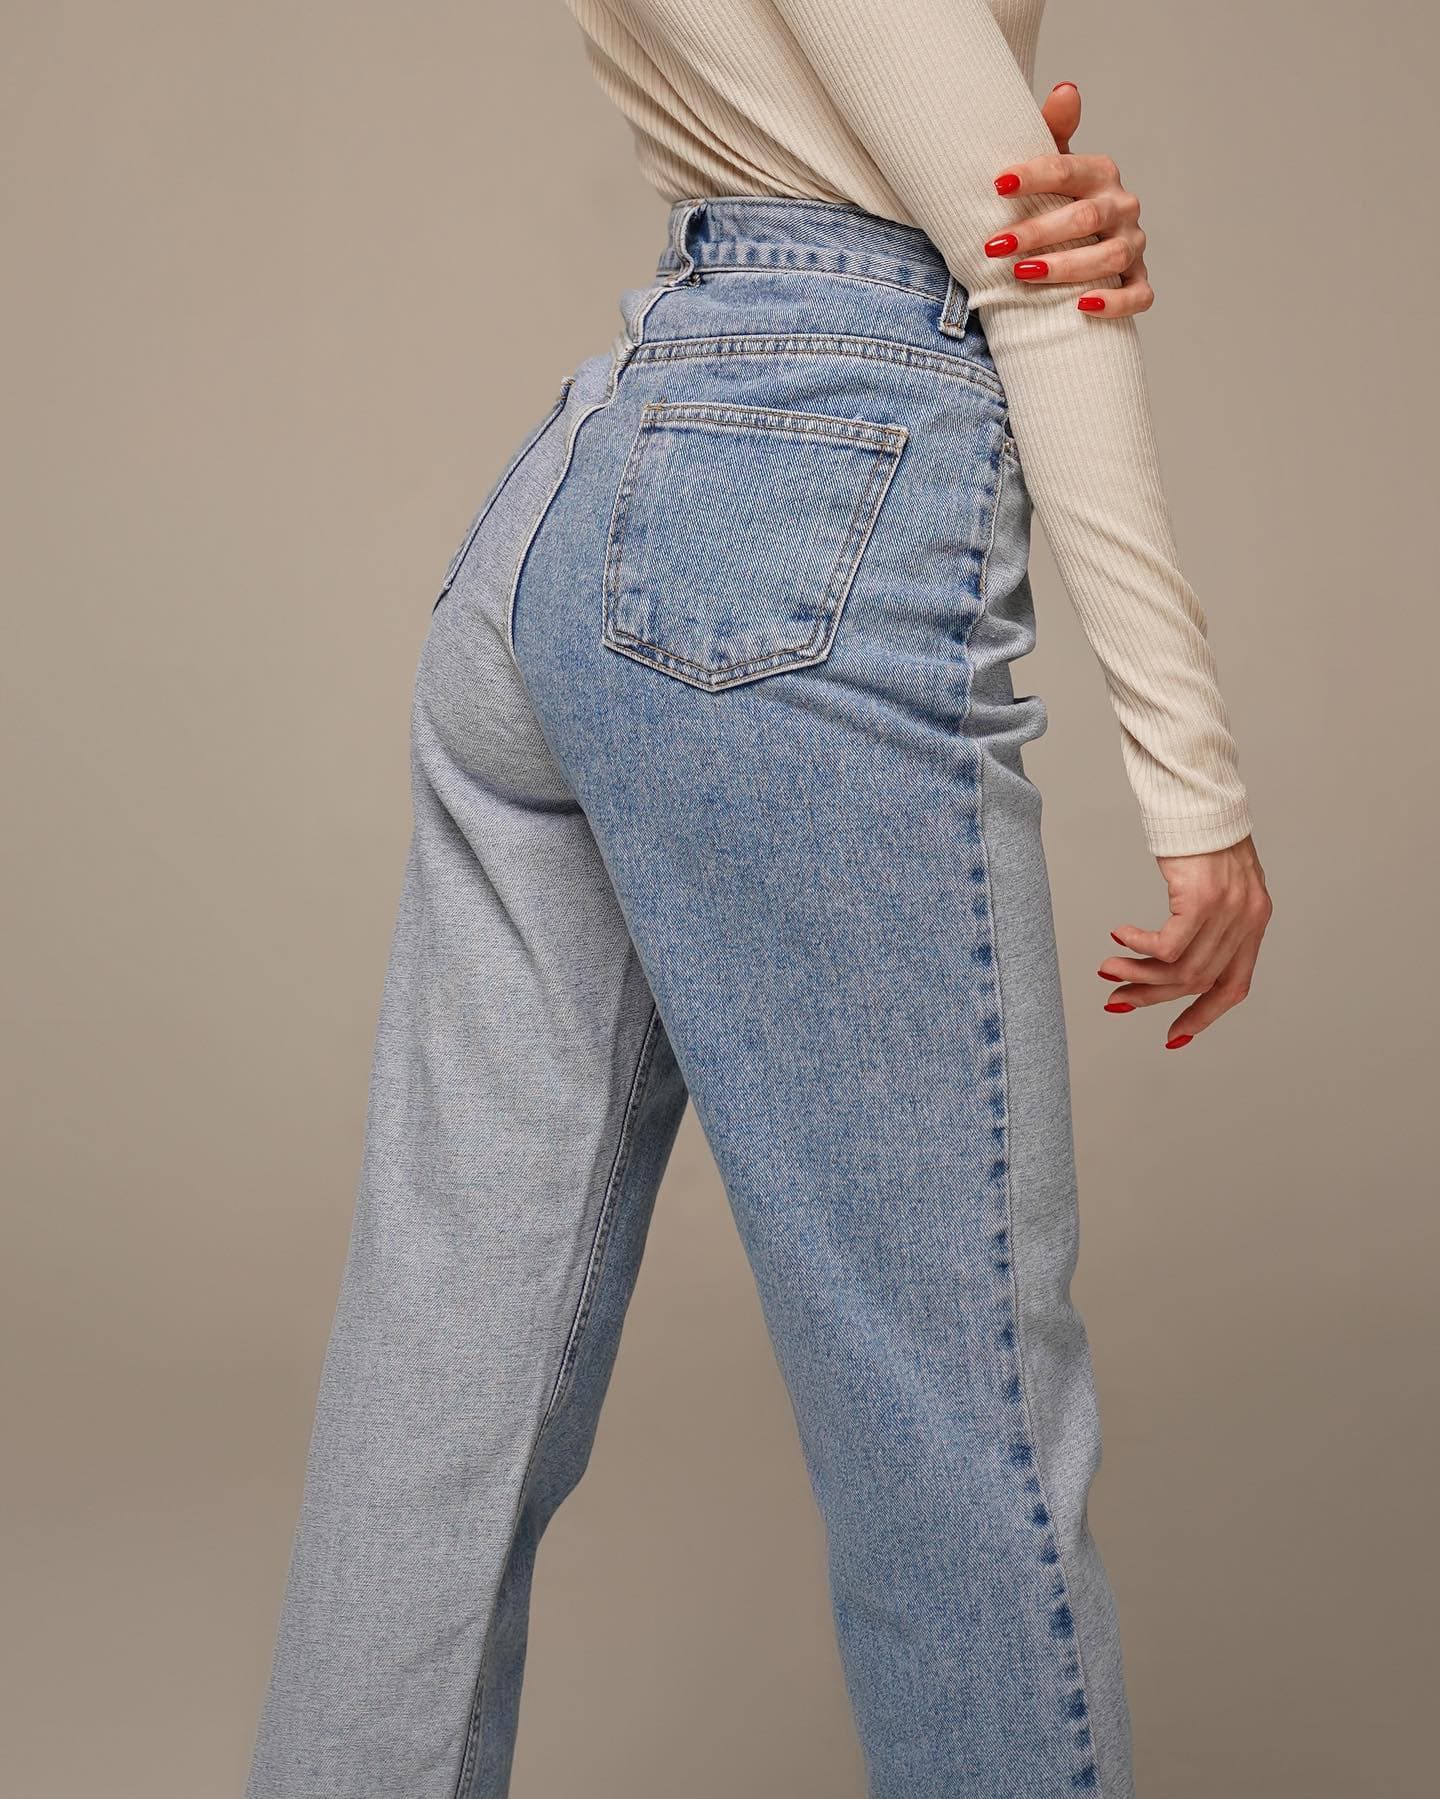 Модные женские джинсы фото №77